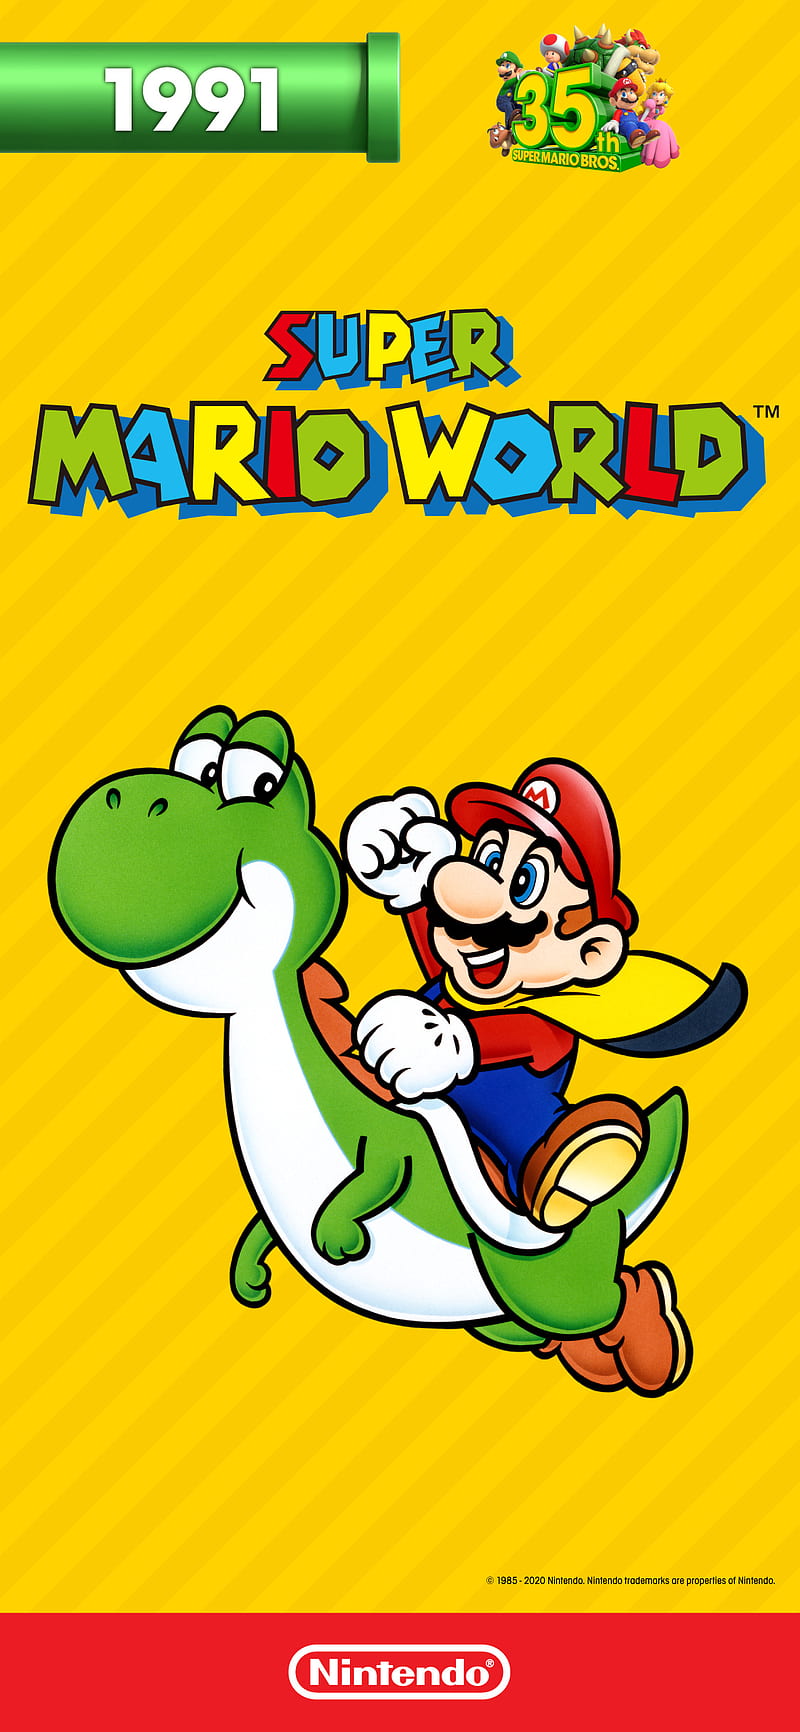 Super Mario World, Mario bros, Nintendo